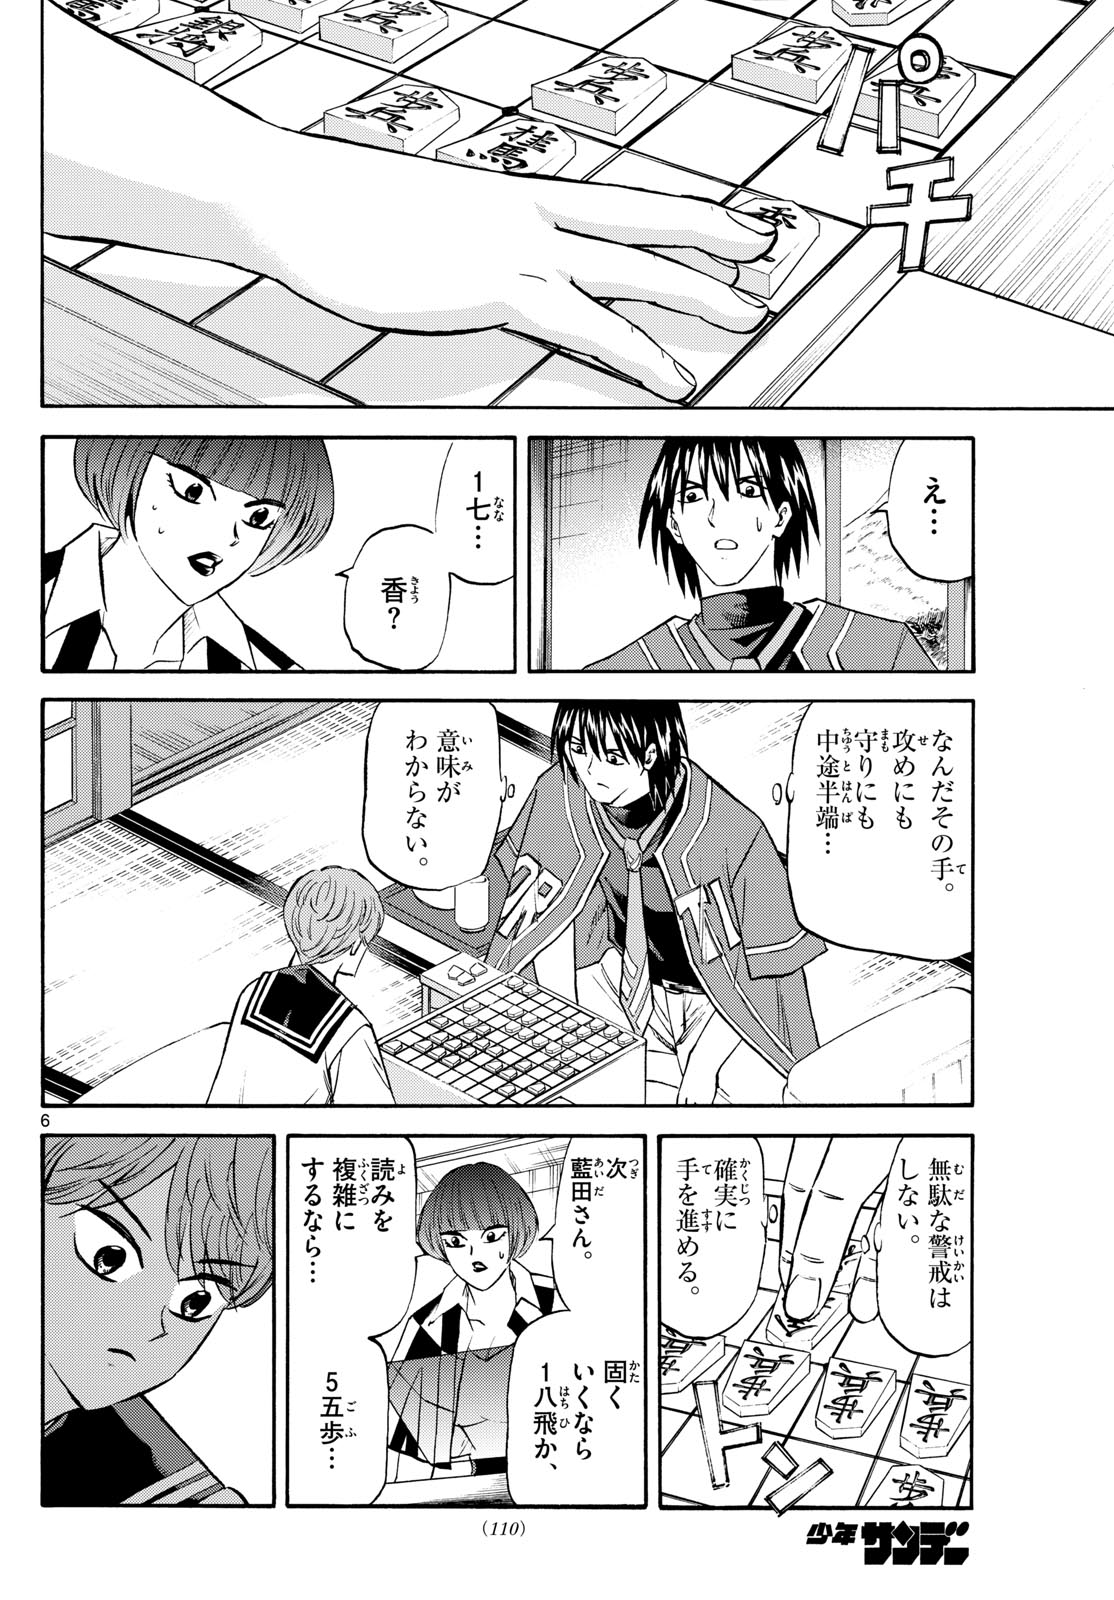 Tatsu to Ichigo - Chapter 198 - Page 6